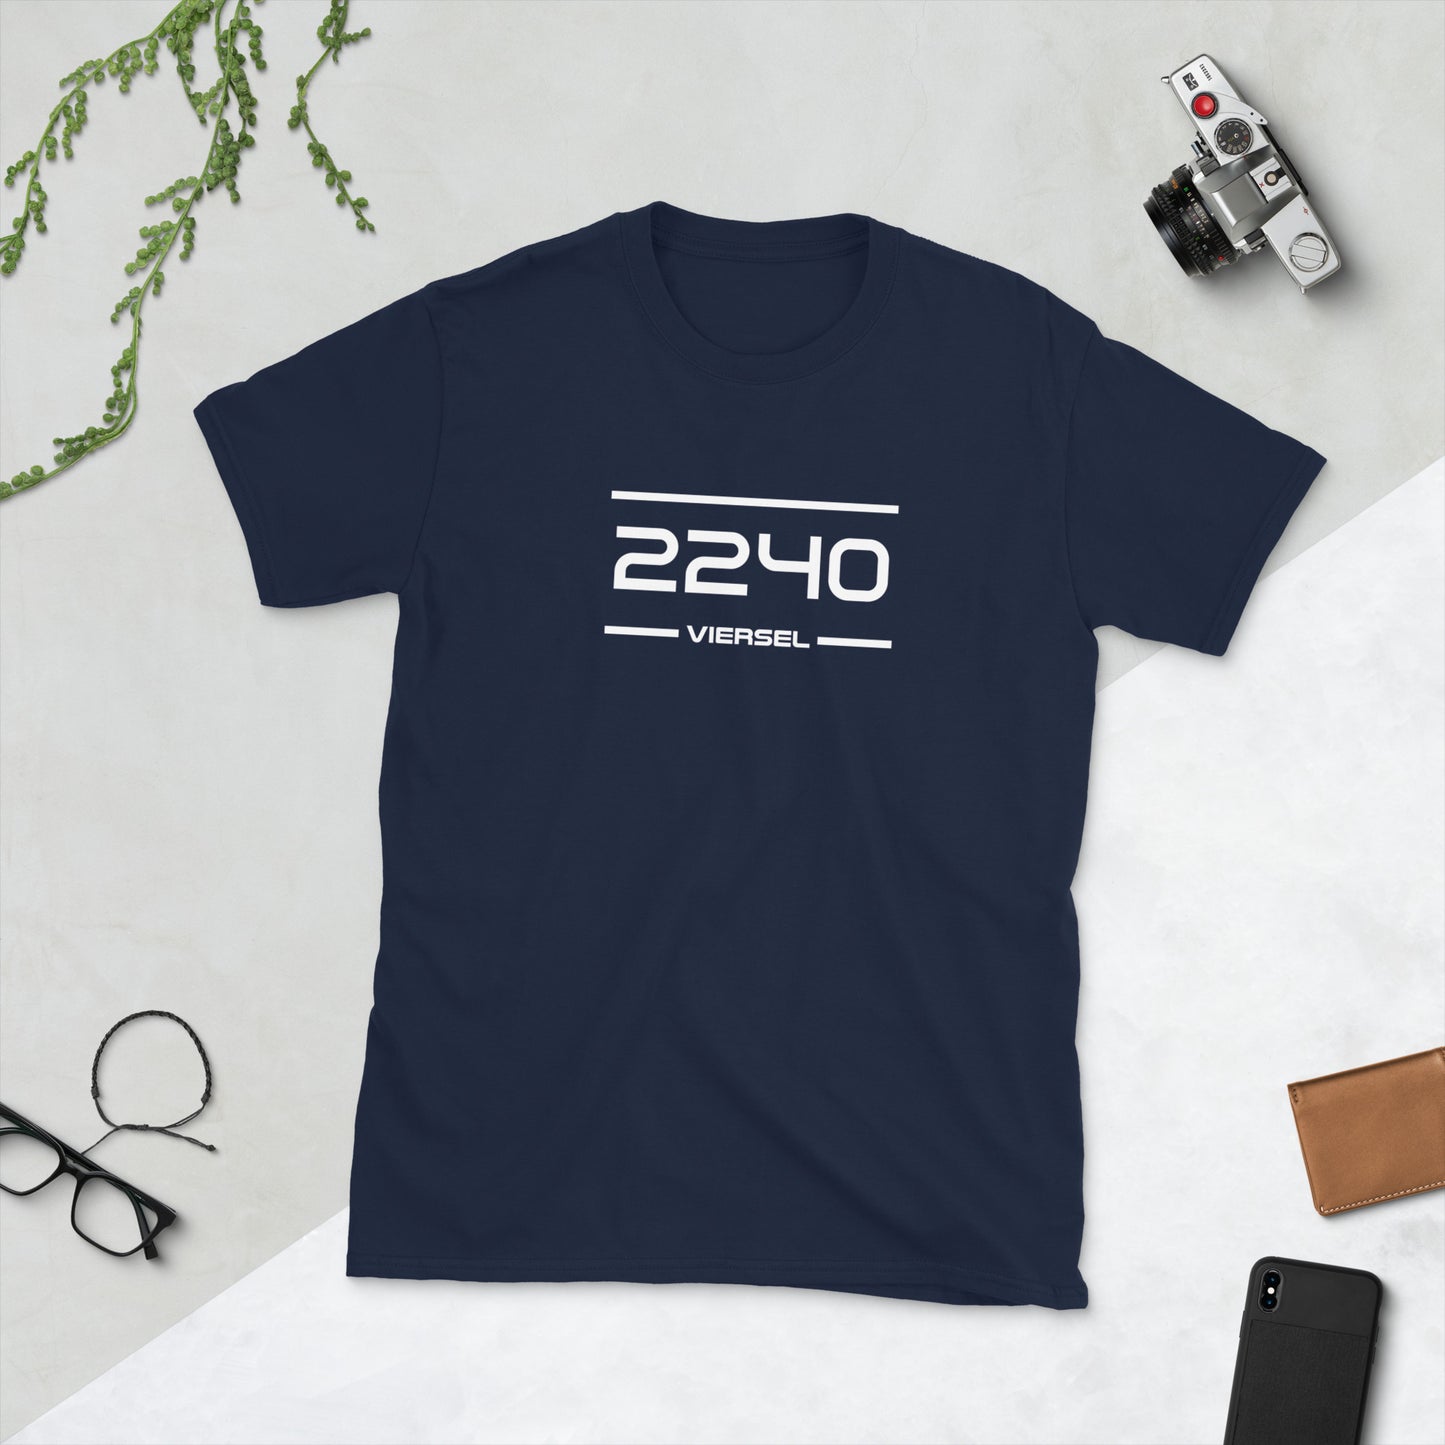 Tshirt - 2240 - Viersel